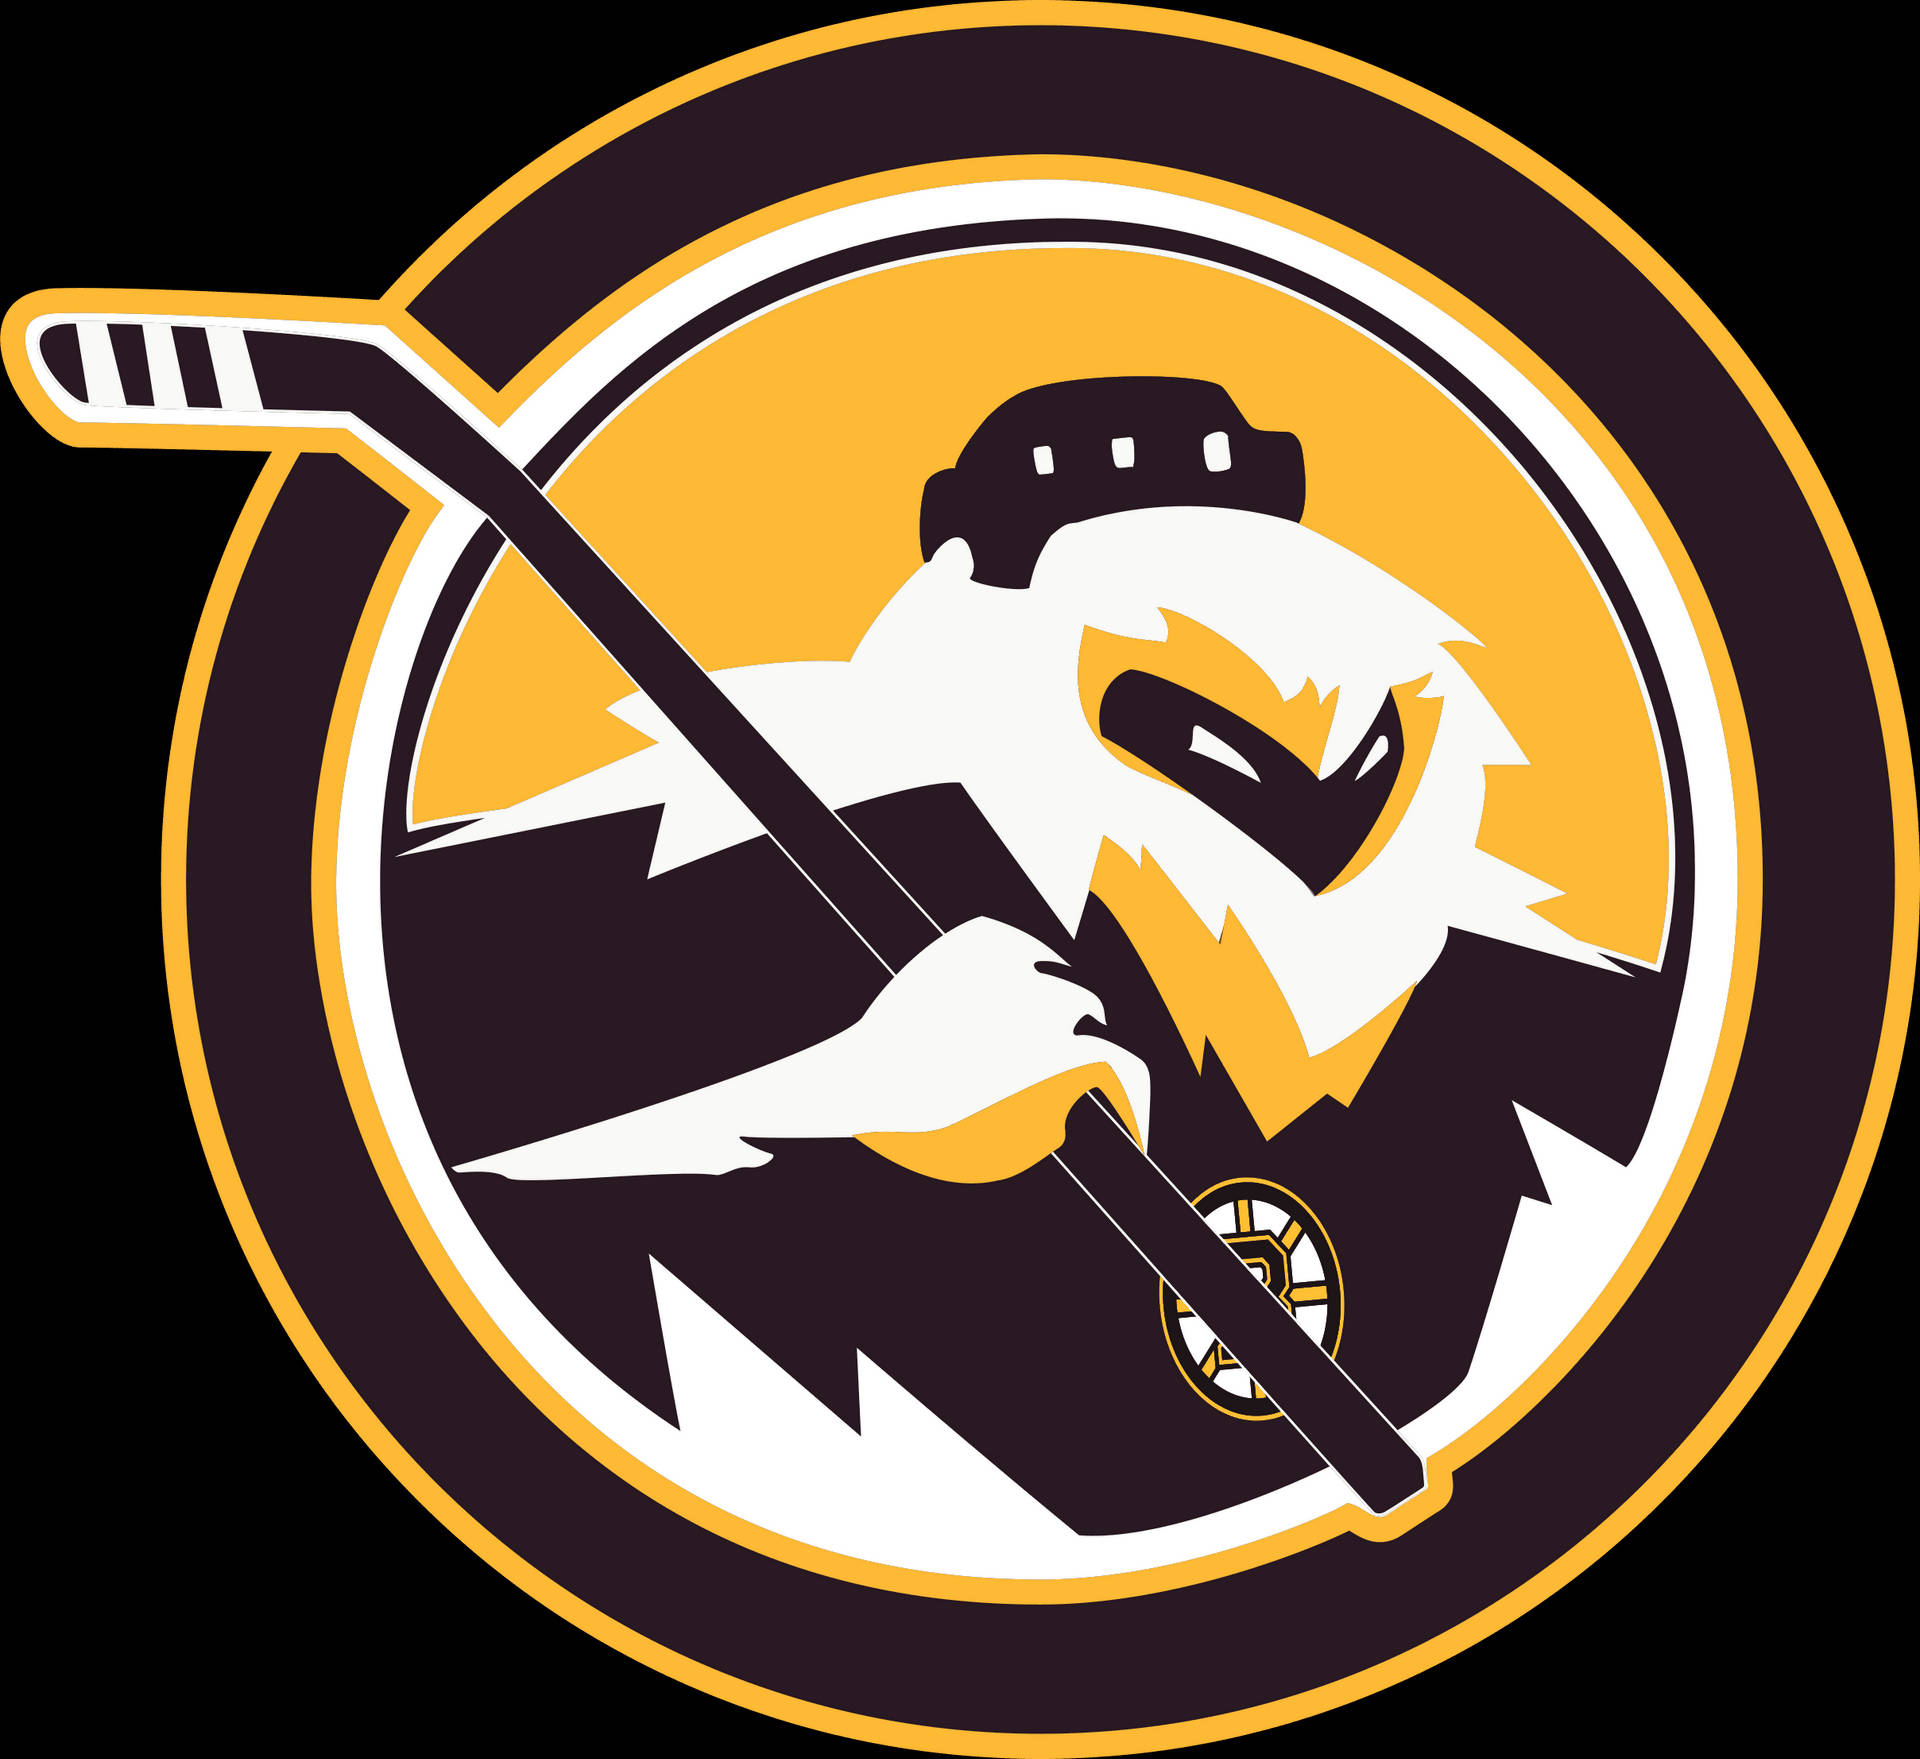 Logo af Boston Bruins-ishockeyholdet. Wallpaper